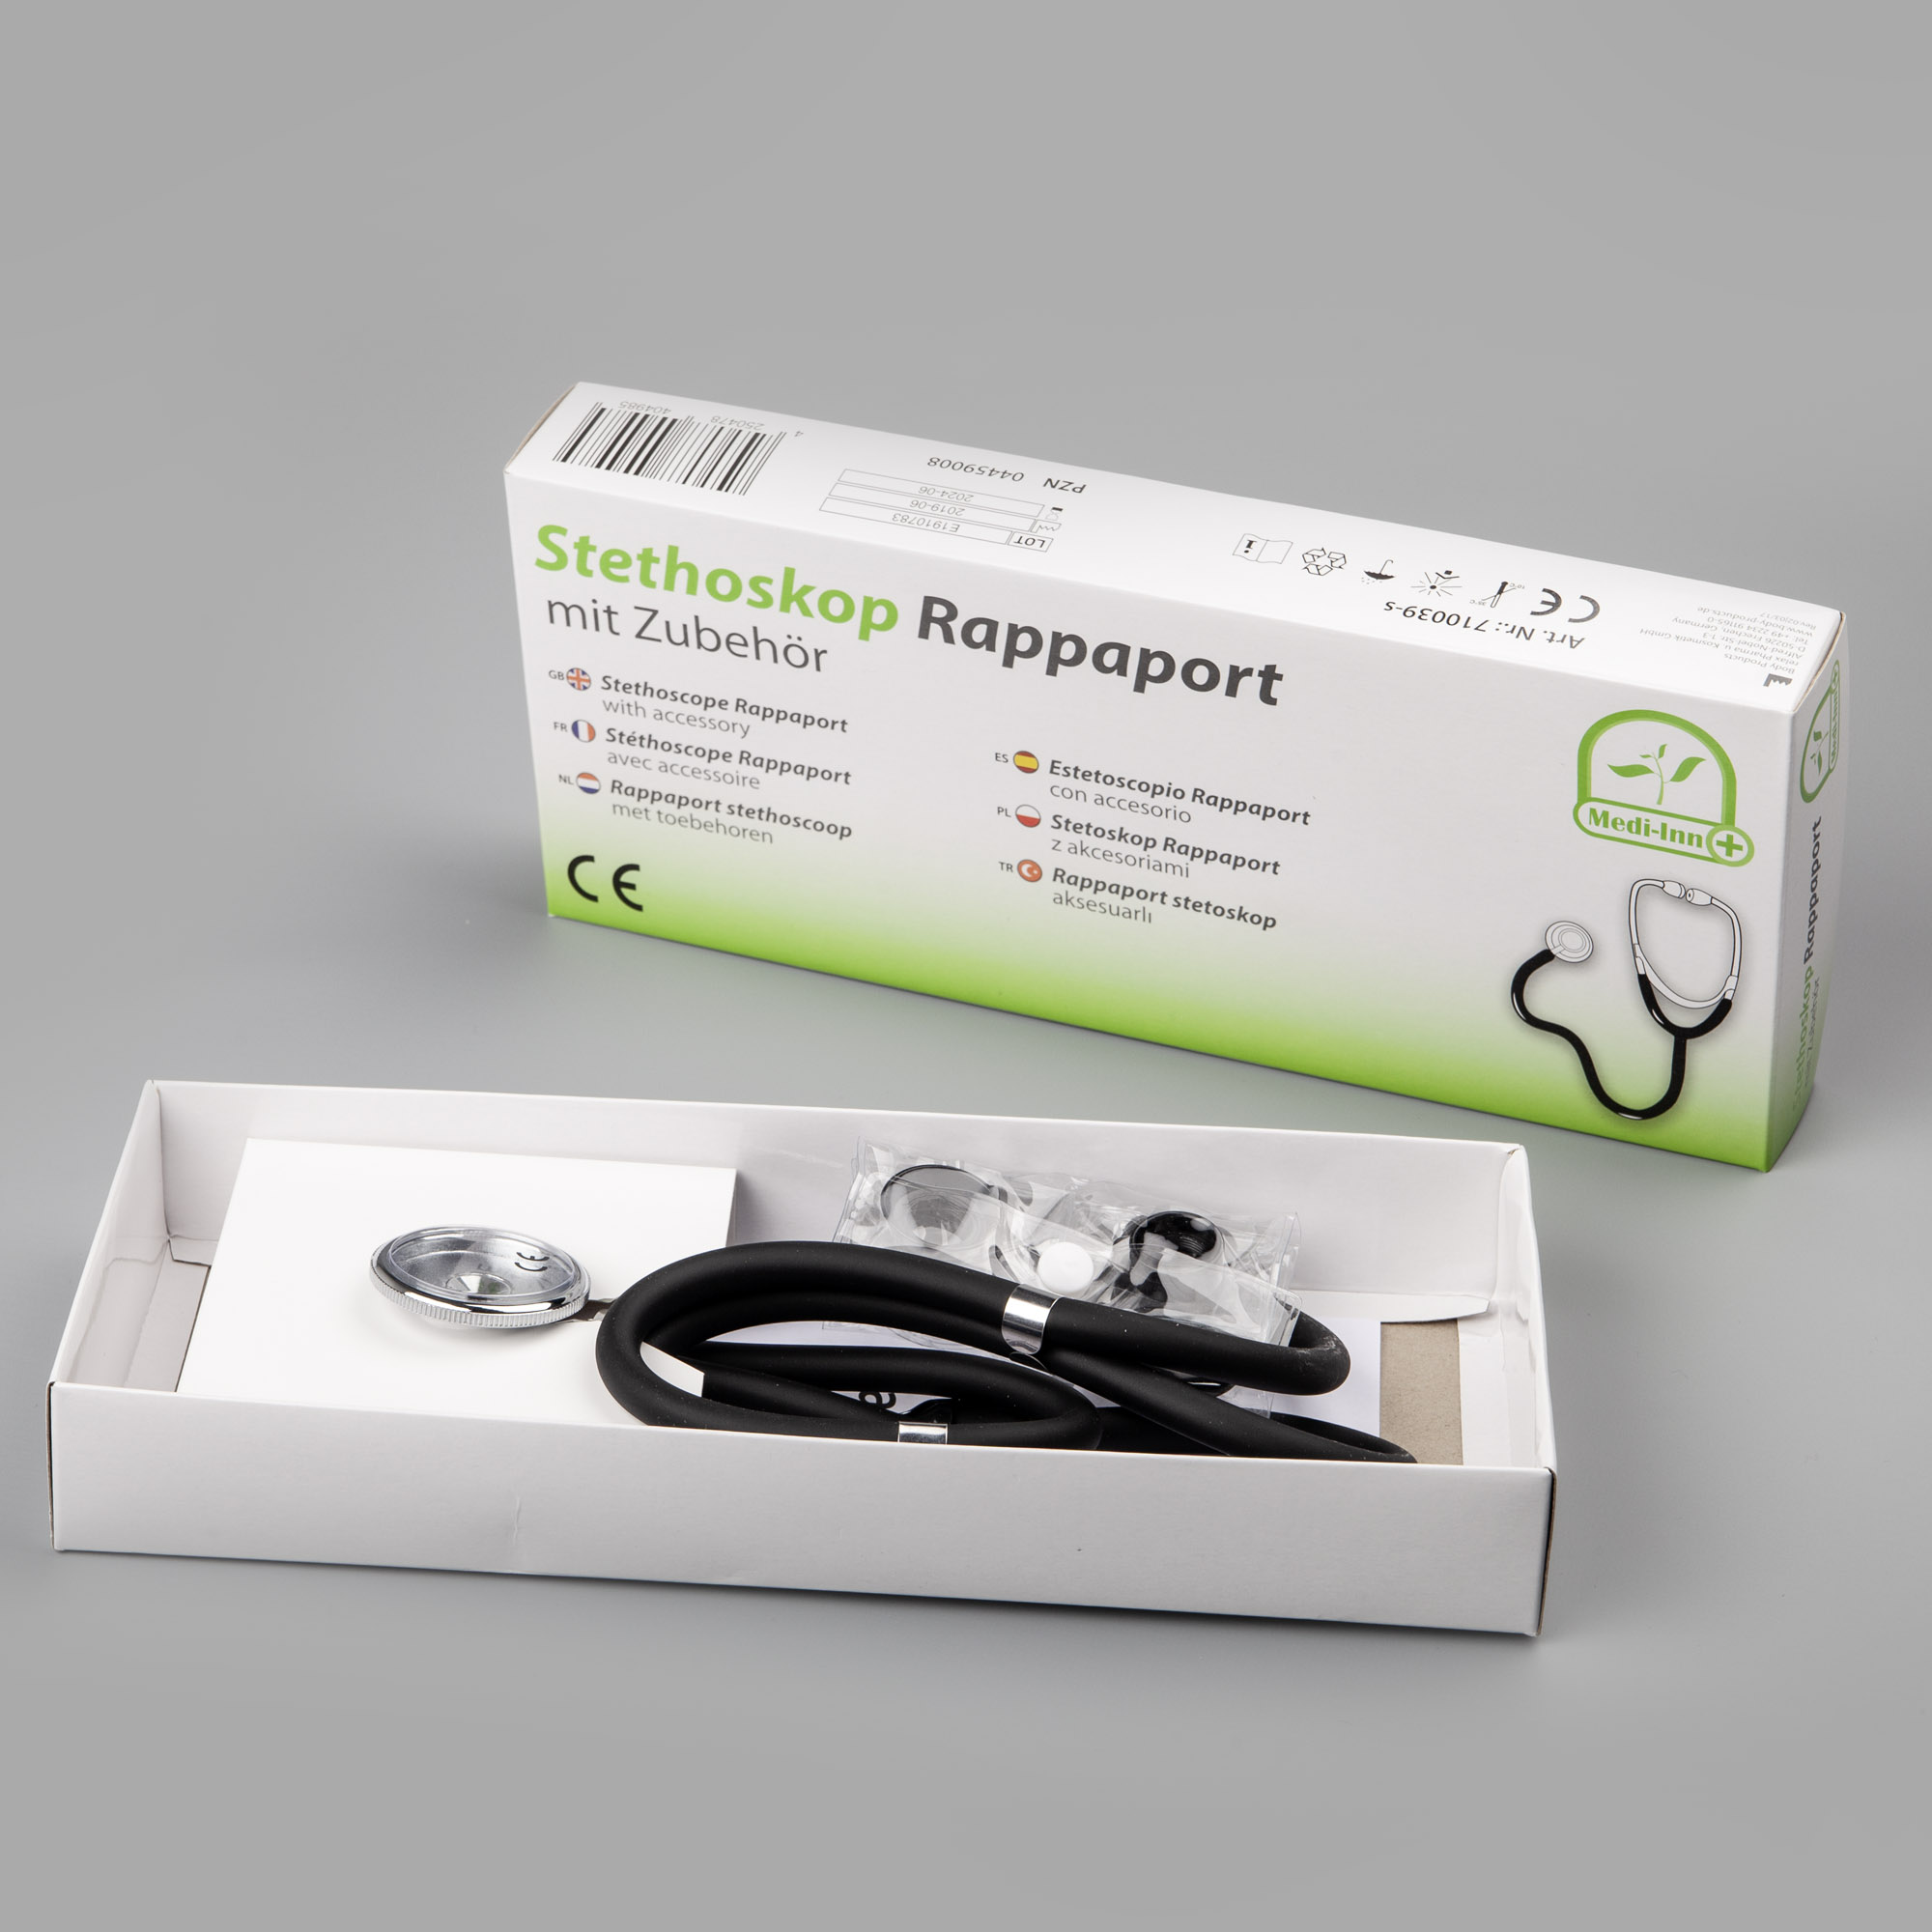 Stethoskop Rappaport mit Zubehör